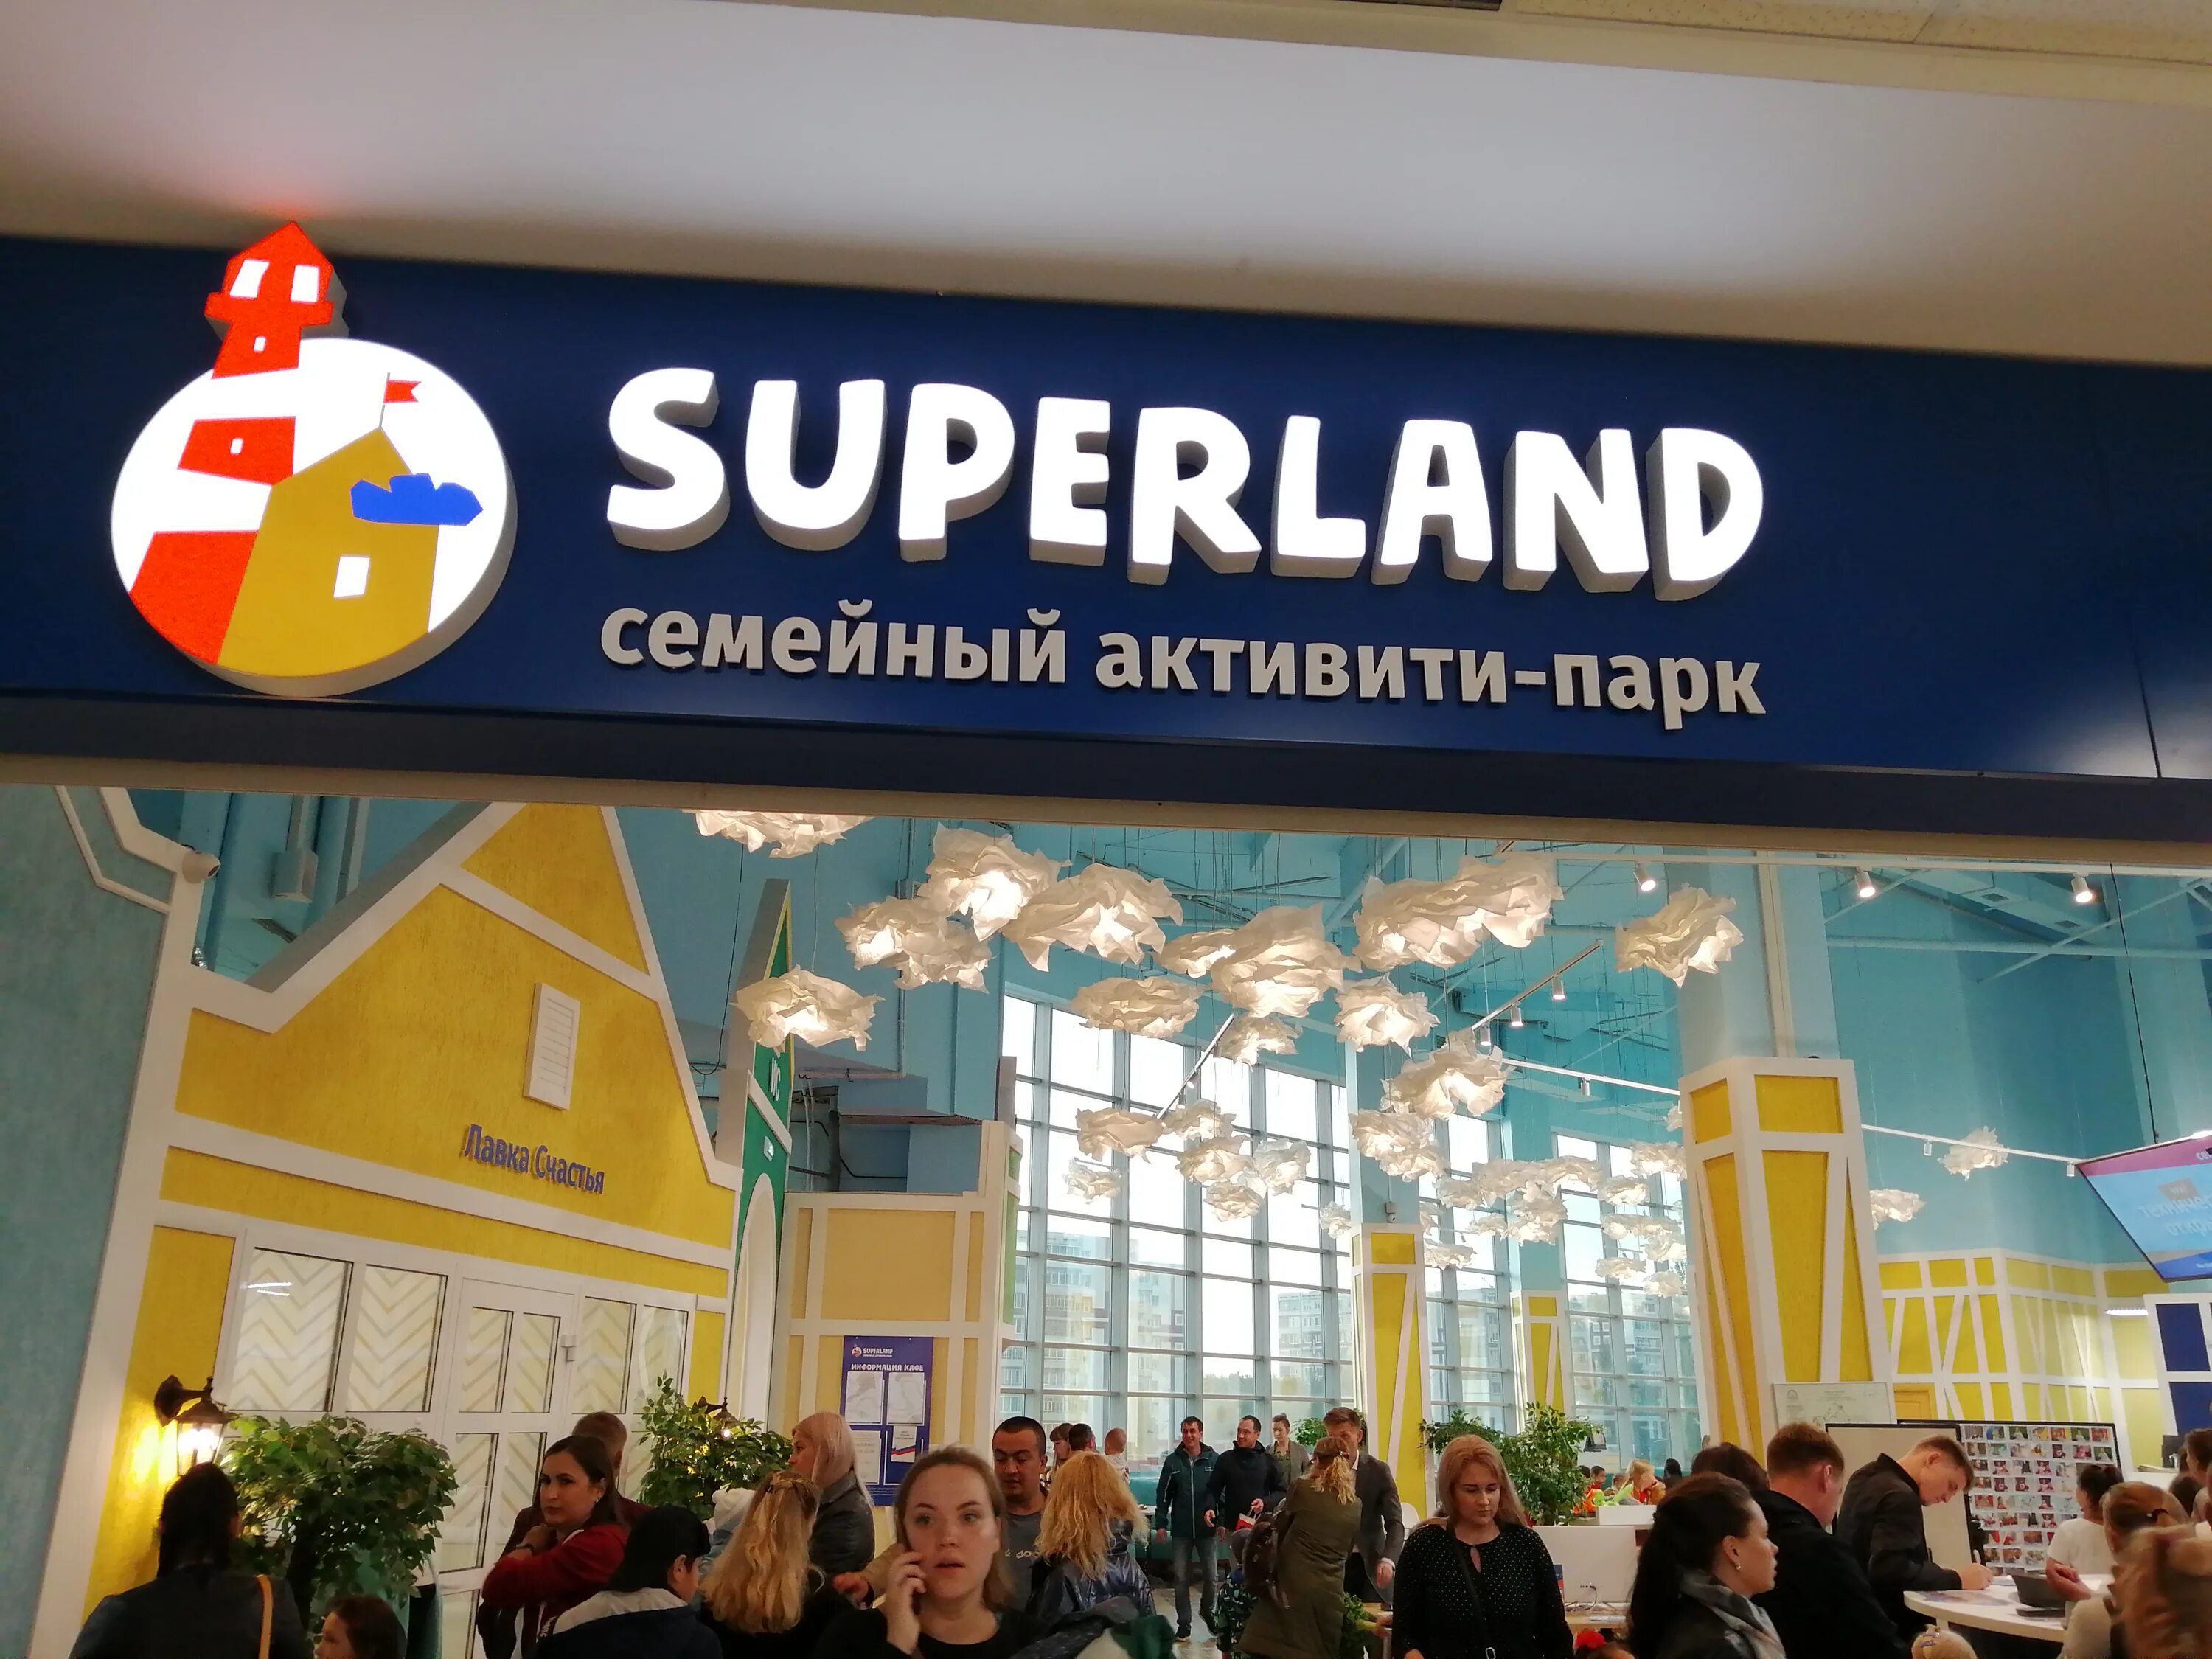 Суперленд Набережные. Superland Пермь. Суперленд Нижнекамск Рамус. Суперлэнд Набережные Челны.